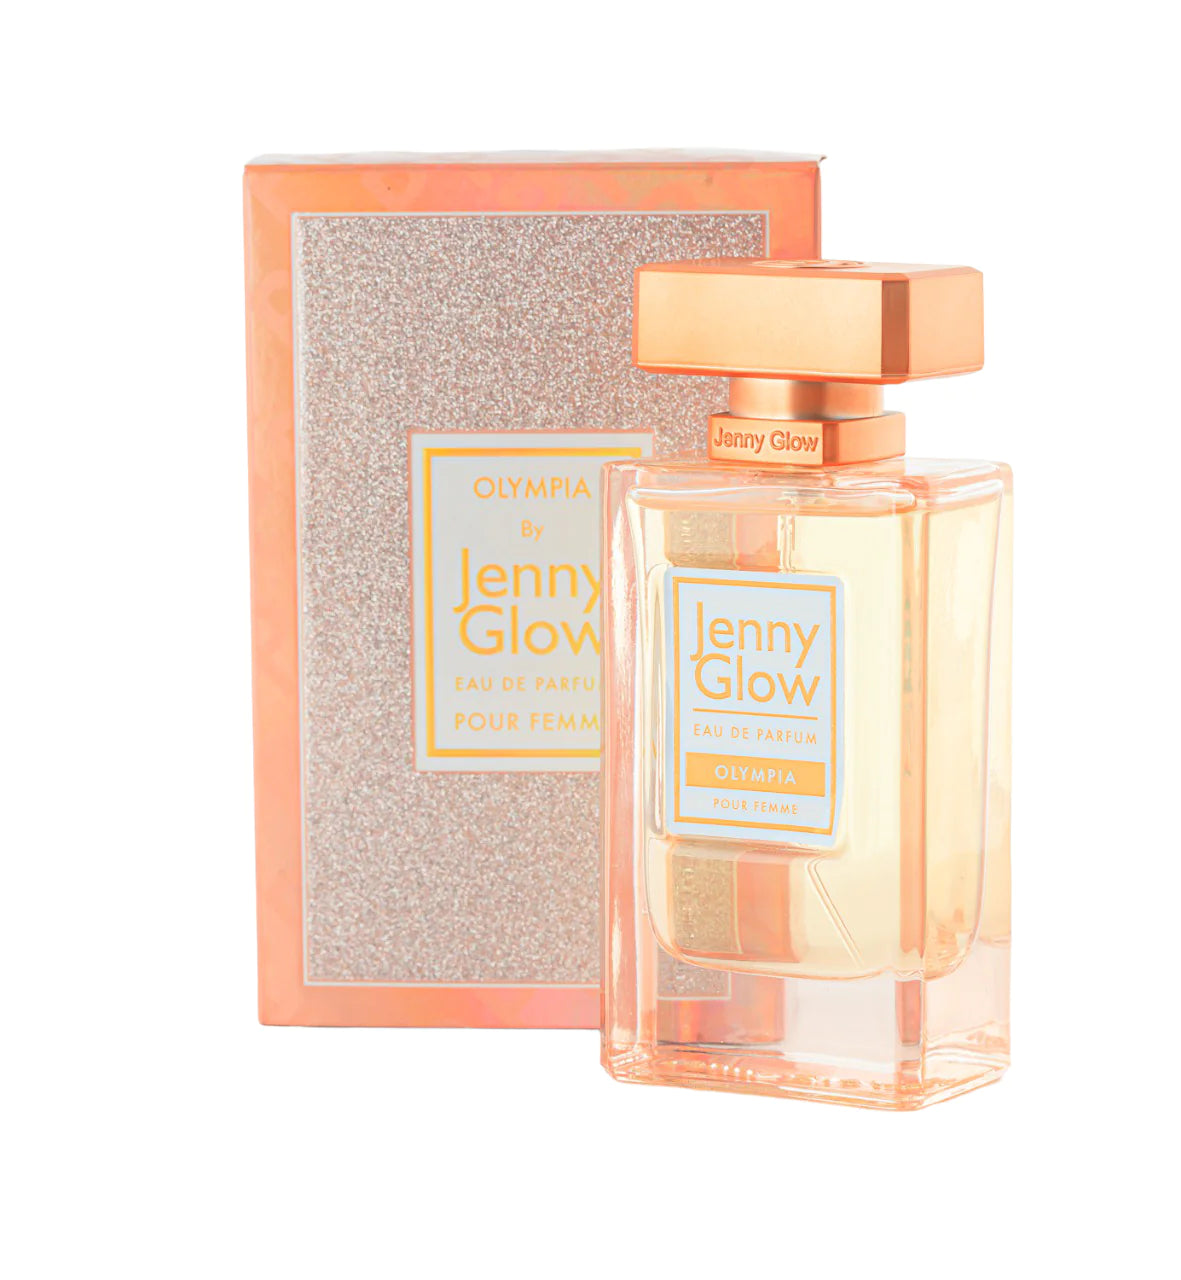 Jenny Glow Olympia Eau De Perfum - 30ml